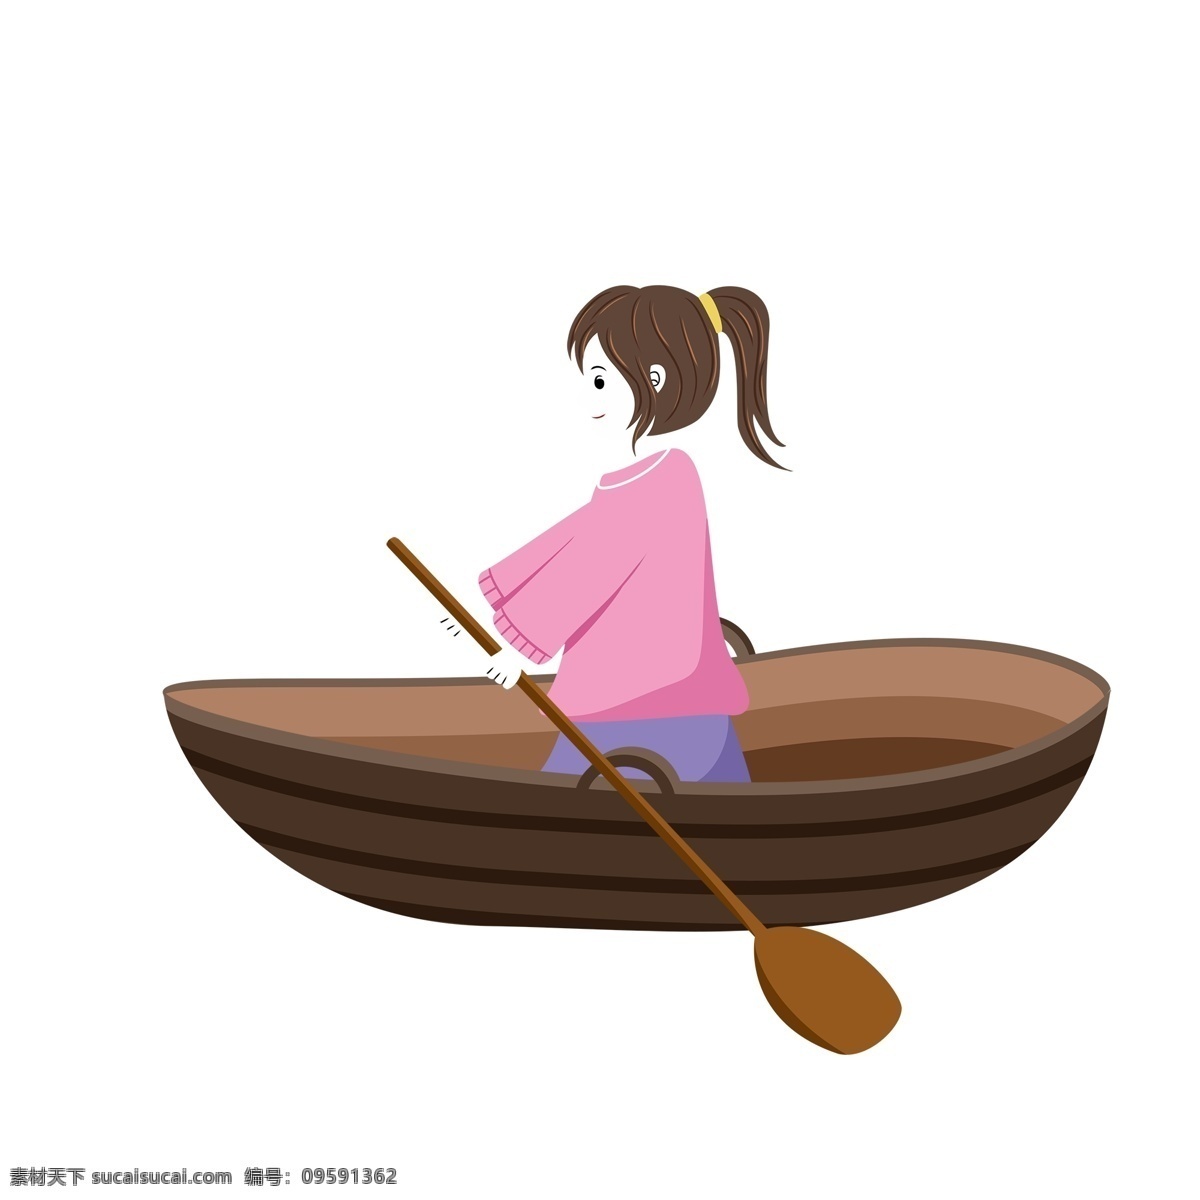 卡通 可爱 划船 女孩子 手绘 女孩 人物